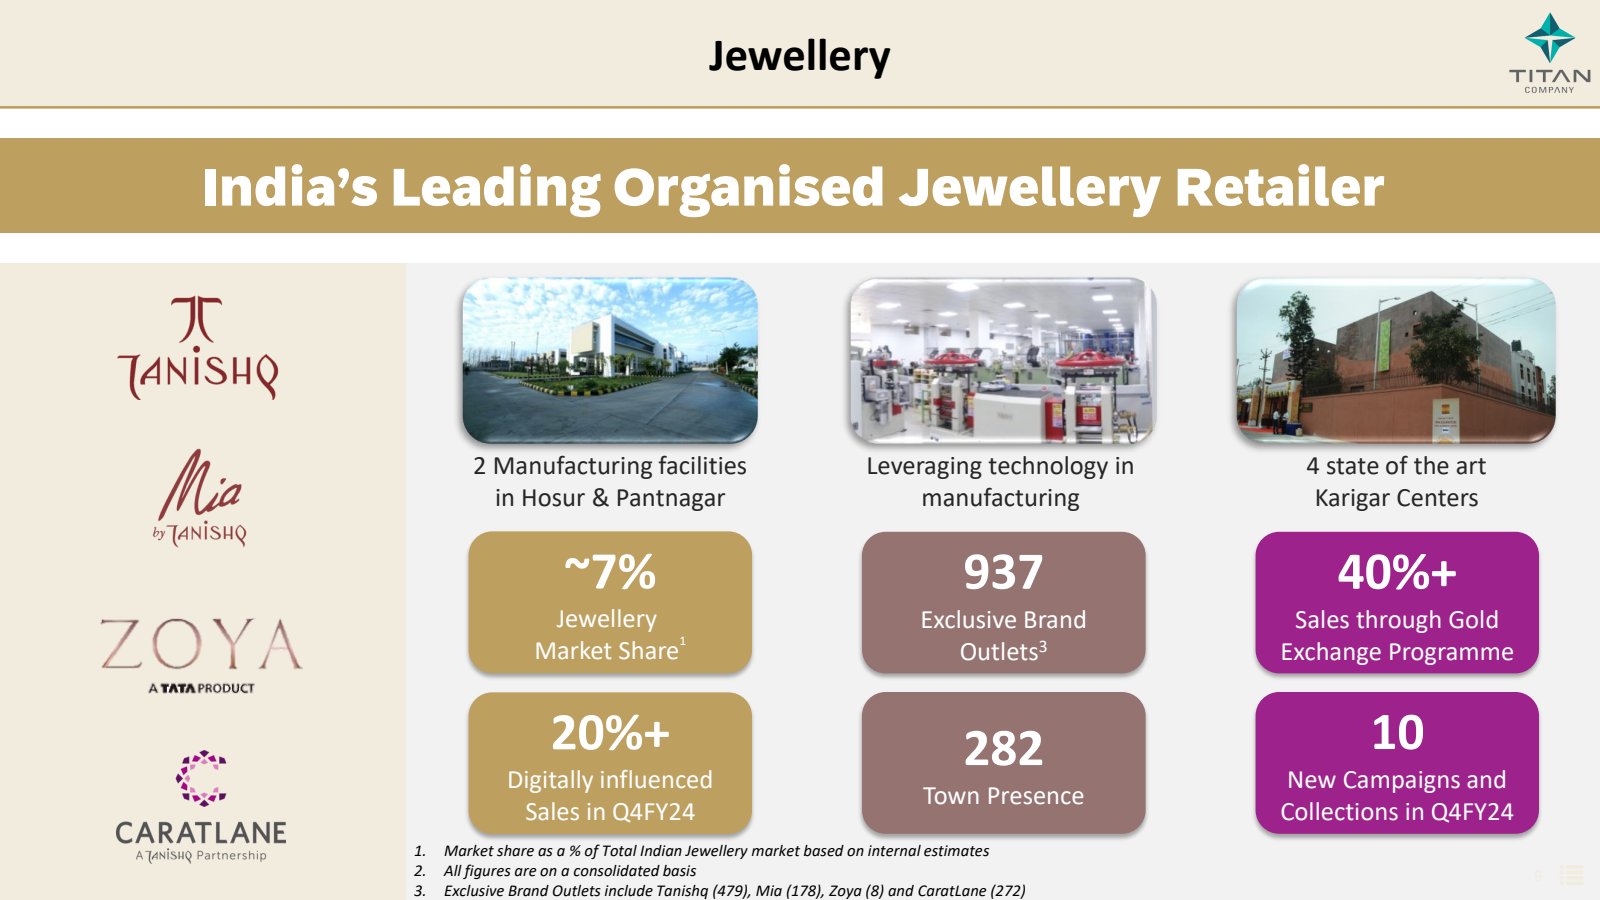 Jewellery 

India's 